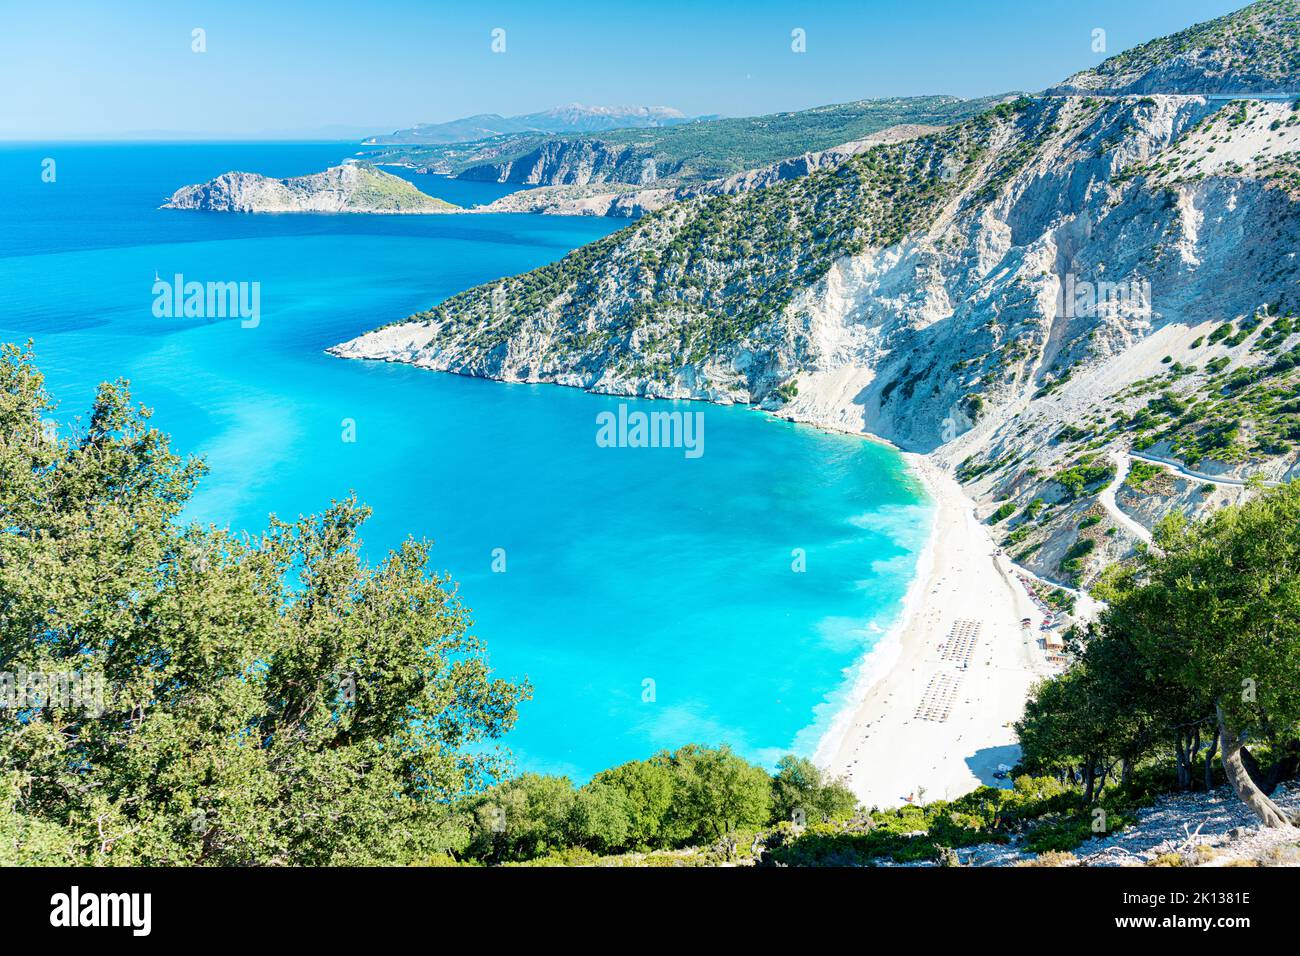 Vista ad alto angolo della spiaggia di Myrtos e del mare cristallino in estate, Cefalonia, Isole IONIE, Isole greche, Grecia, Europa Foto Stock